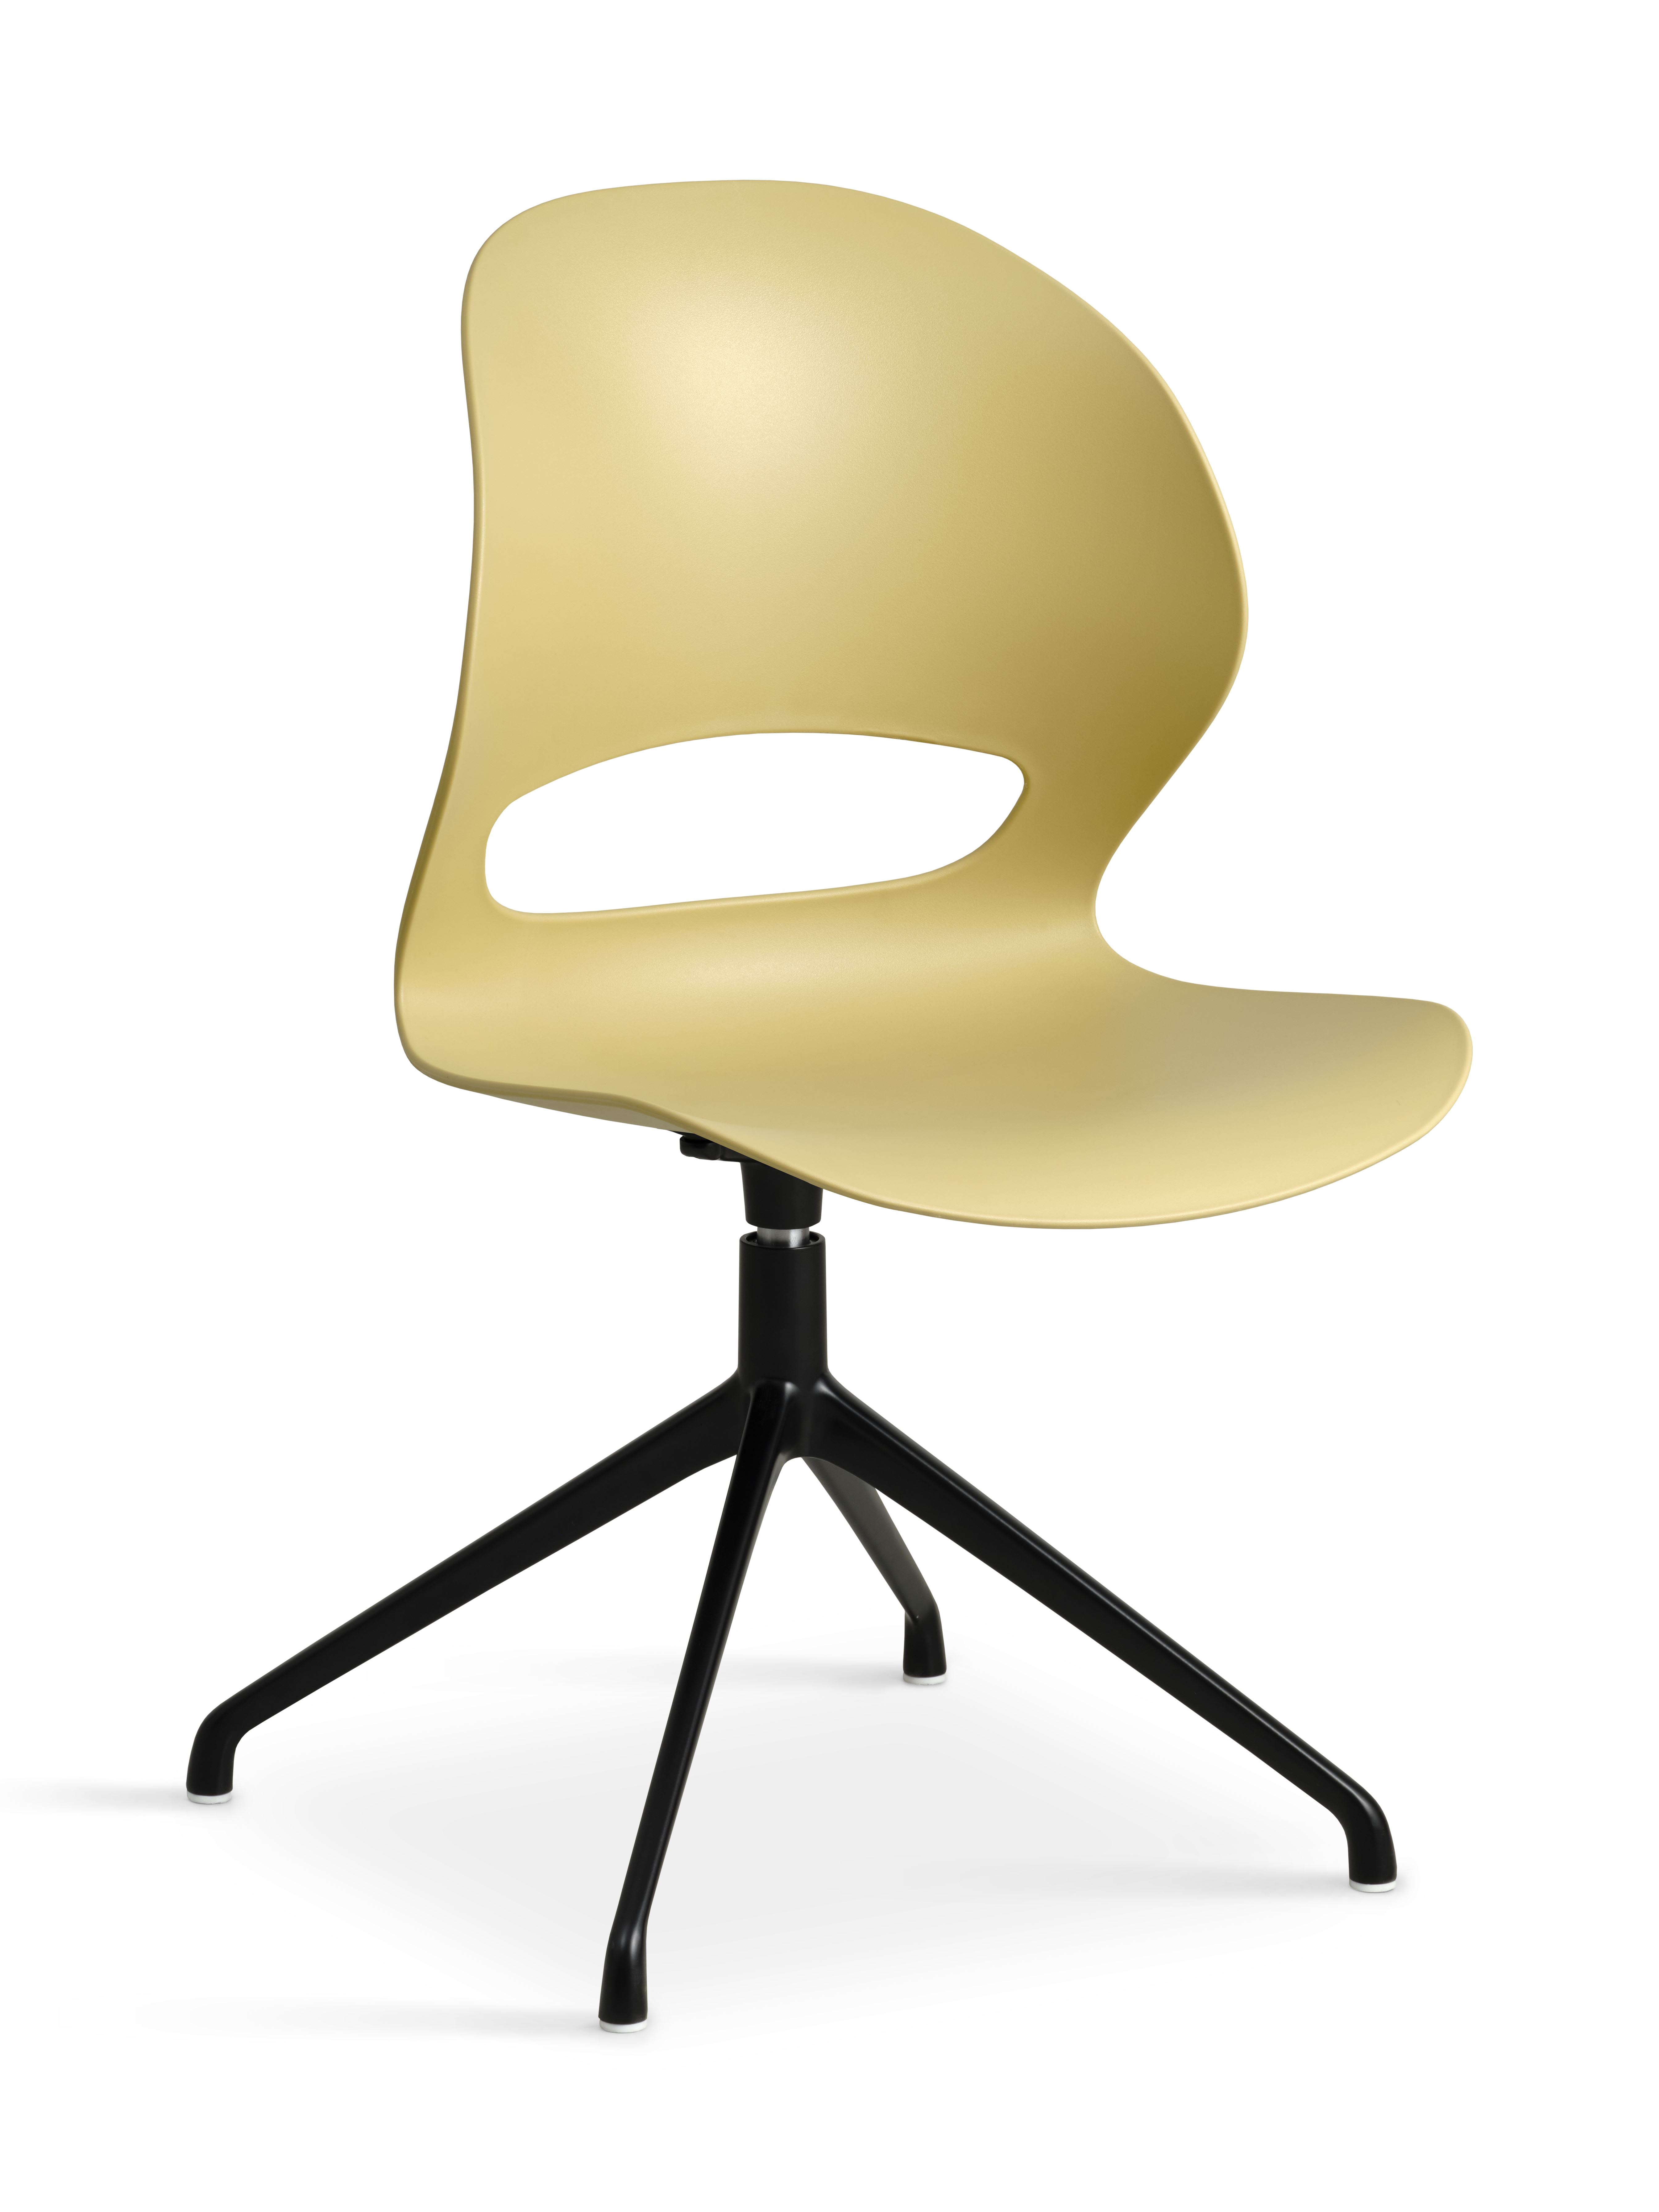 Linea spisebordsstol, m. drejefunktion - sennepsgul PVC og sort metal